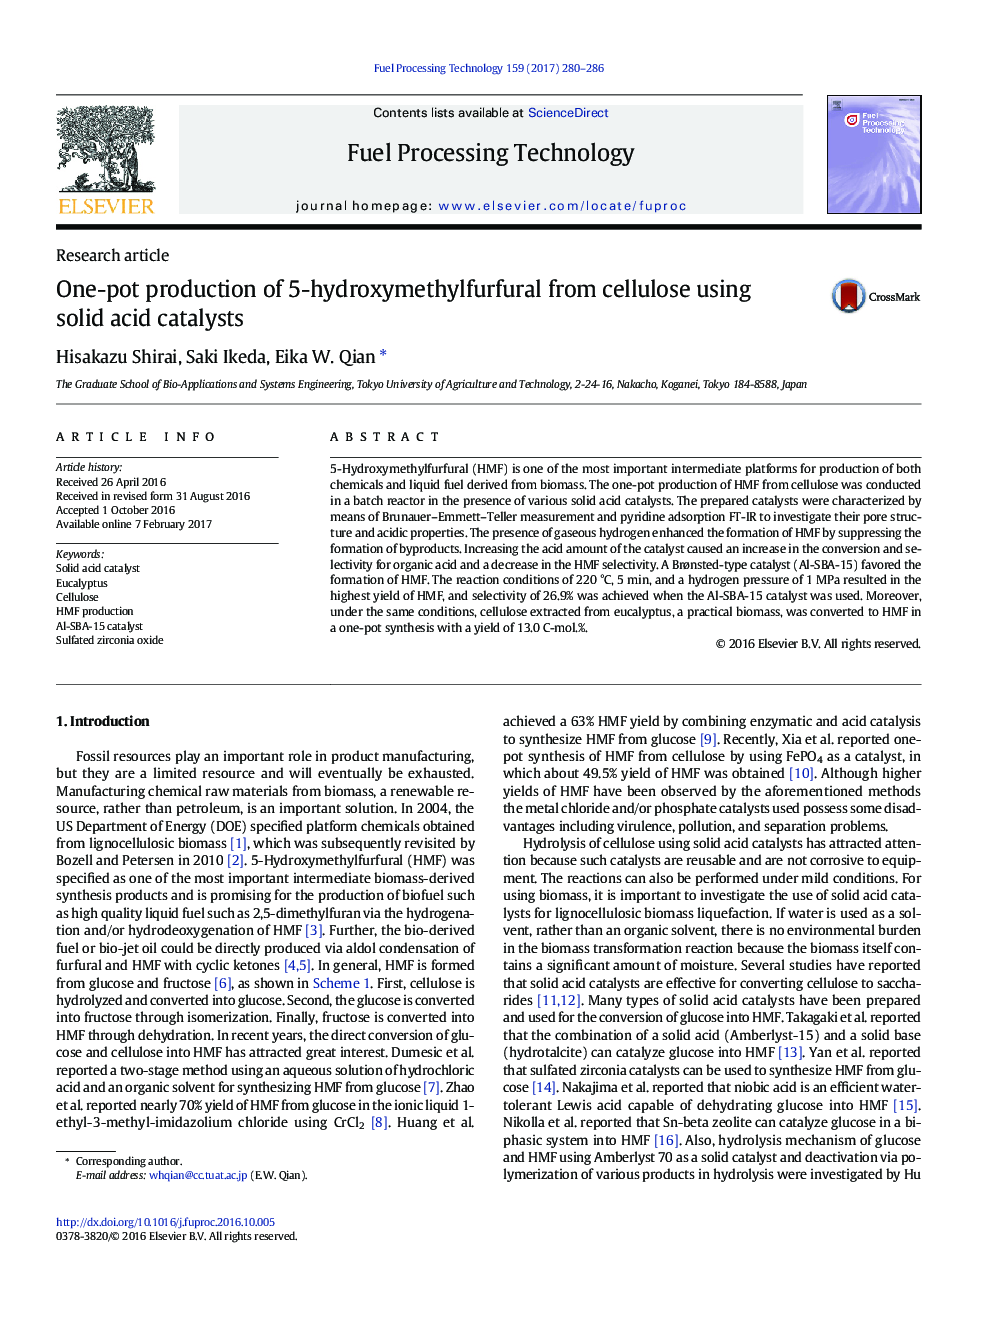 مقاله پژوهشی تولید یک گلدان 5 هیدروکسی متیل فورفورال از سلولز با استفاده از کاتالیزور اسید جامد 